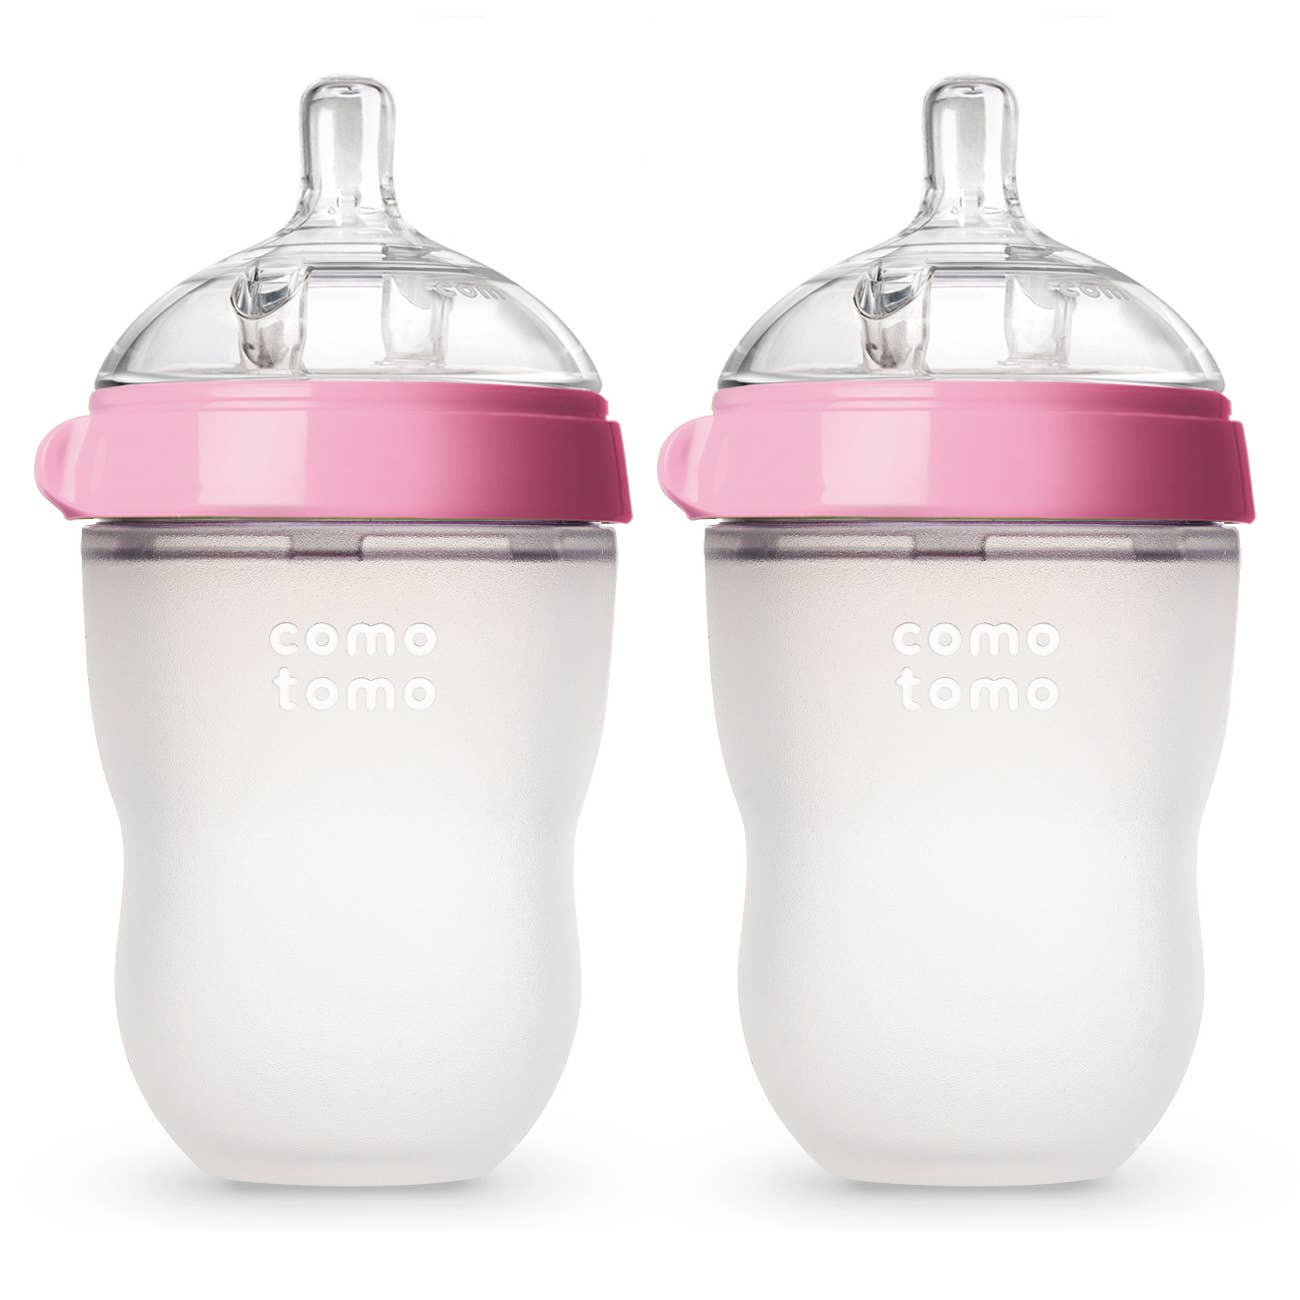 Comotomo - Comotomo Baby Bottle, Double Pack - 8 oz - Pink